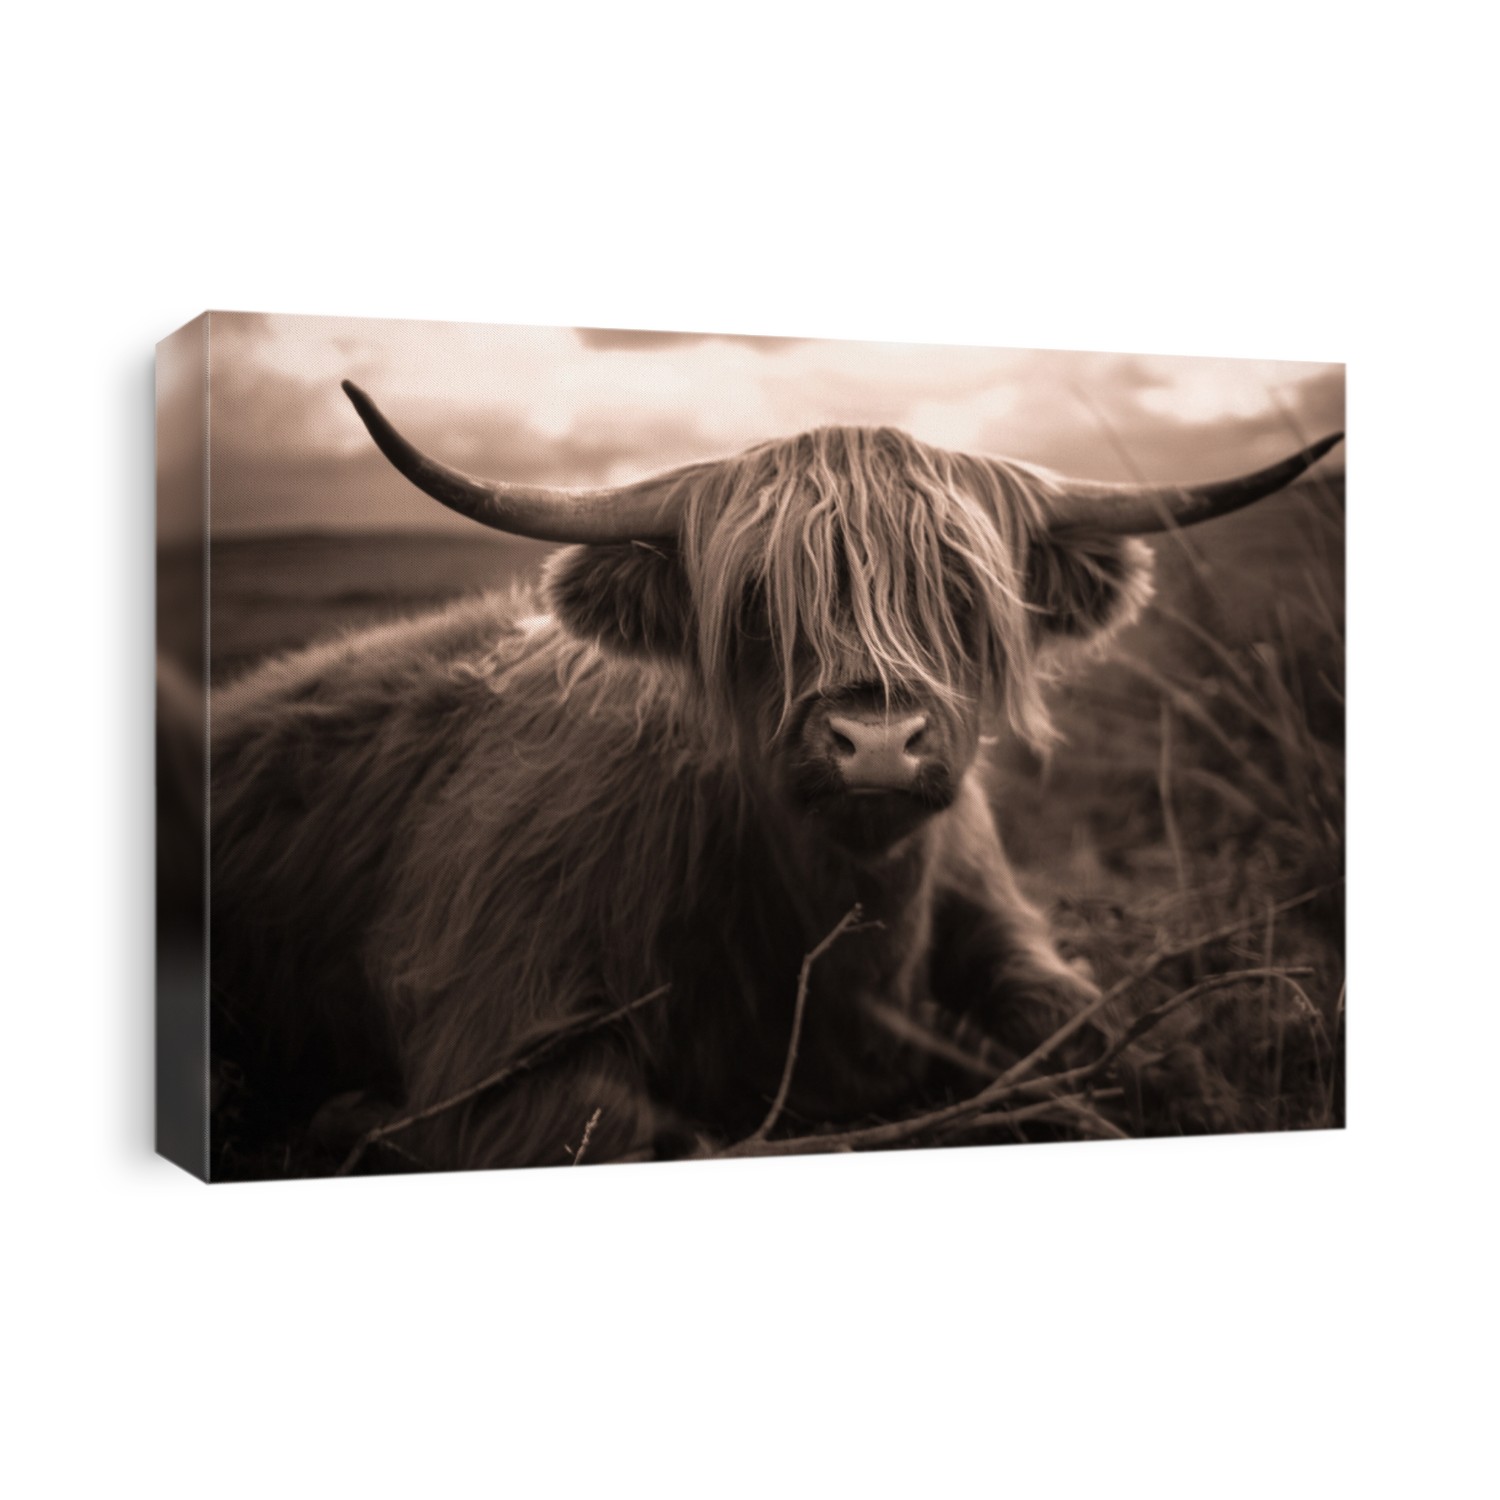 Hairy scottish highland cow, sepia